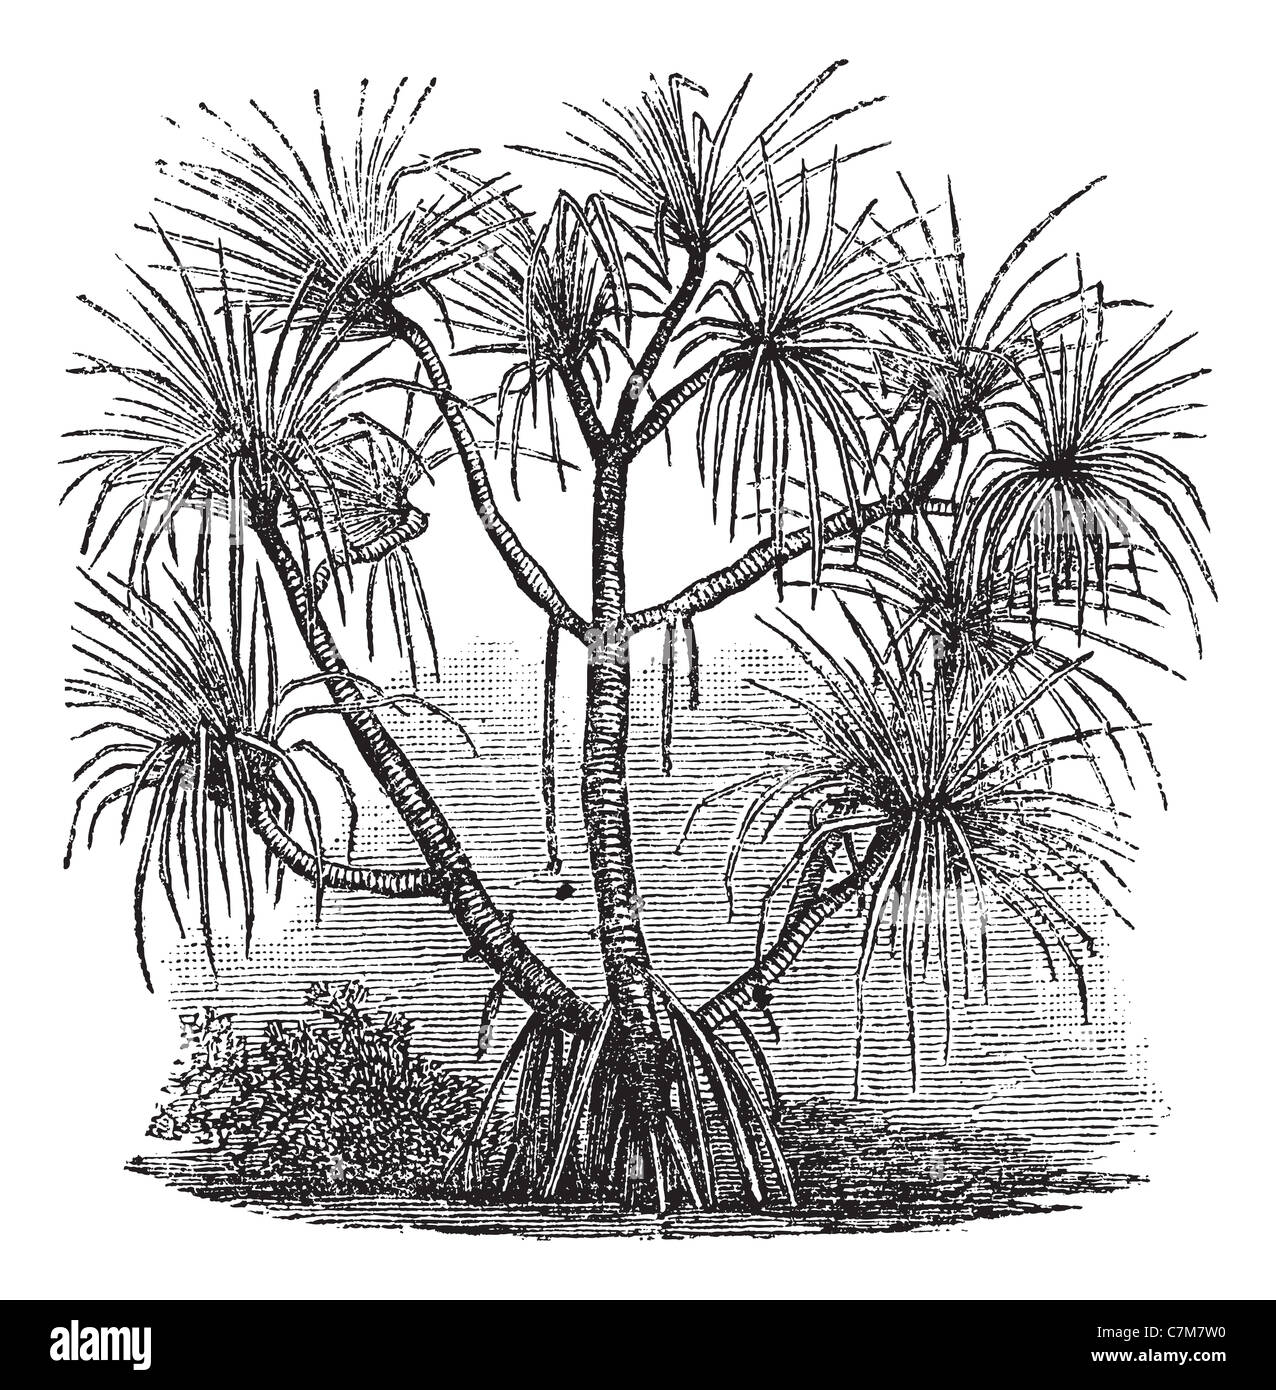 Pandanus candelabrum, vintage engraving. Old engraved illustration of Pandanus candelabrum tree. Stock Photo